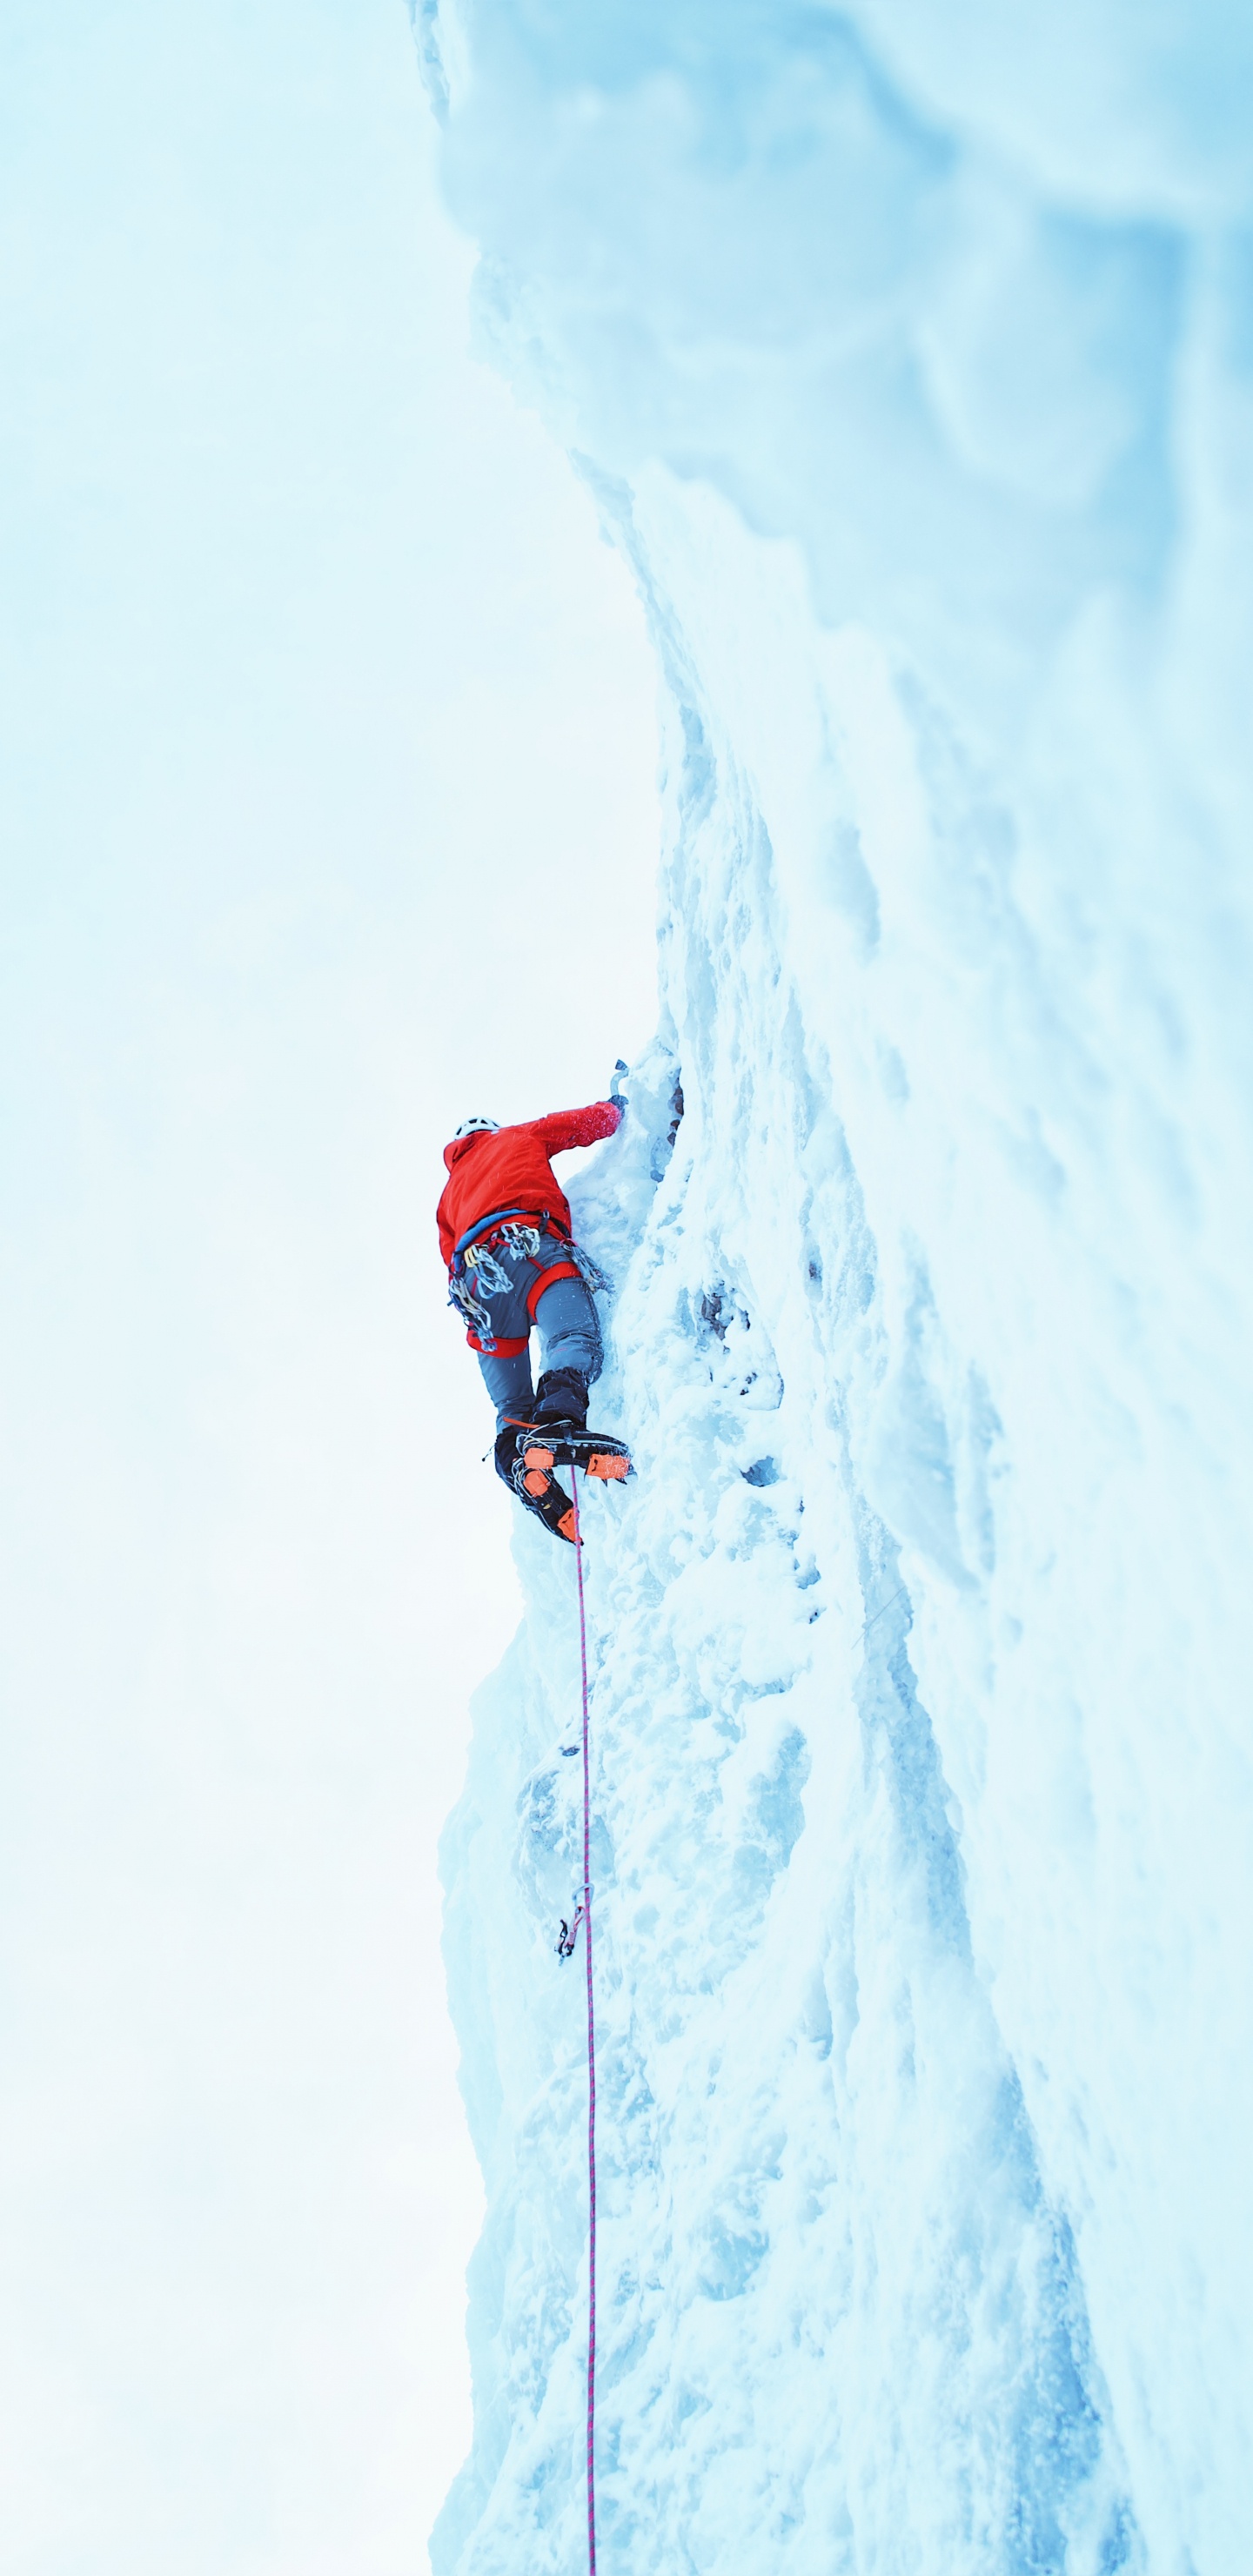 Personne en Veste Rouge et Pantalon Bleu Sur la Montagne Couverte de Neige Pendant la Journée. Wallpaper in 1440x2960 Resolution